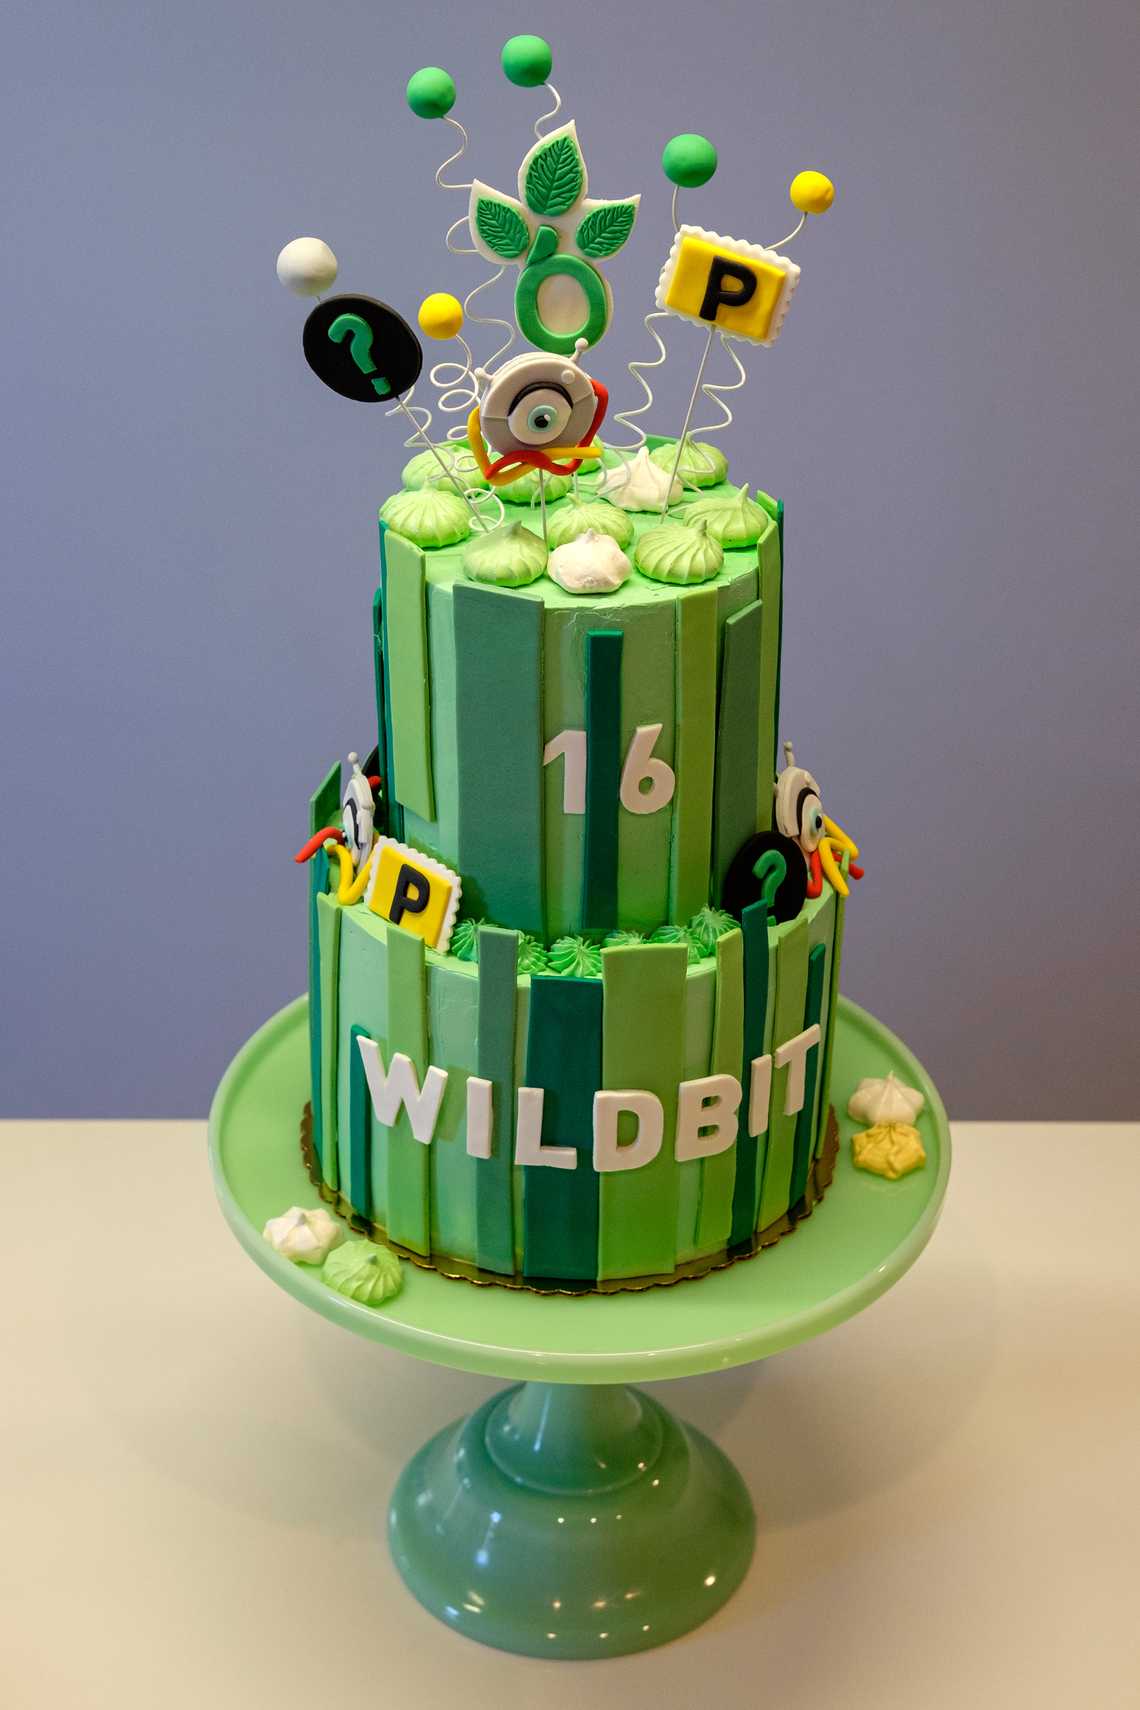 Wildbit’s 16th Anniversary Cake — October 28, 2016